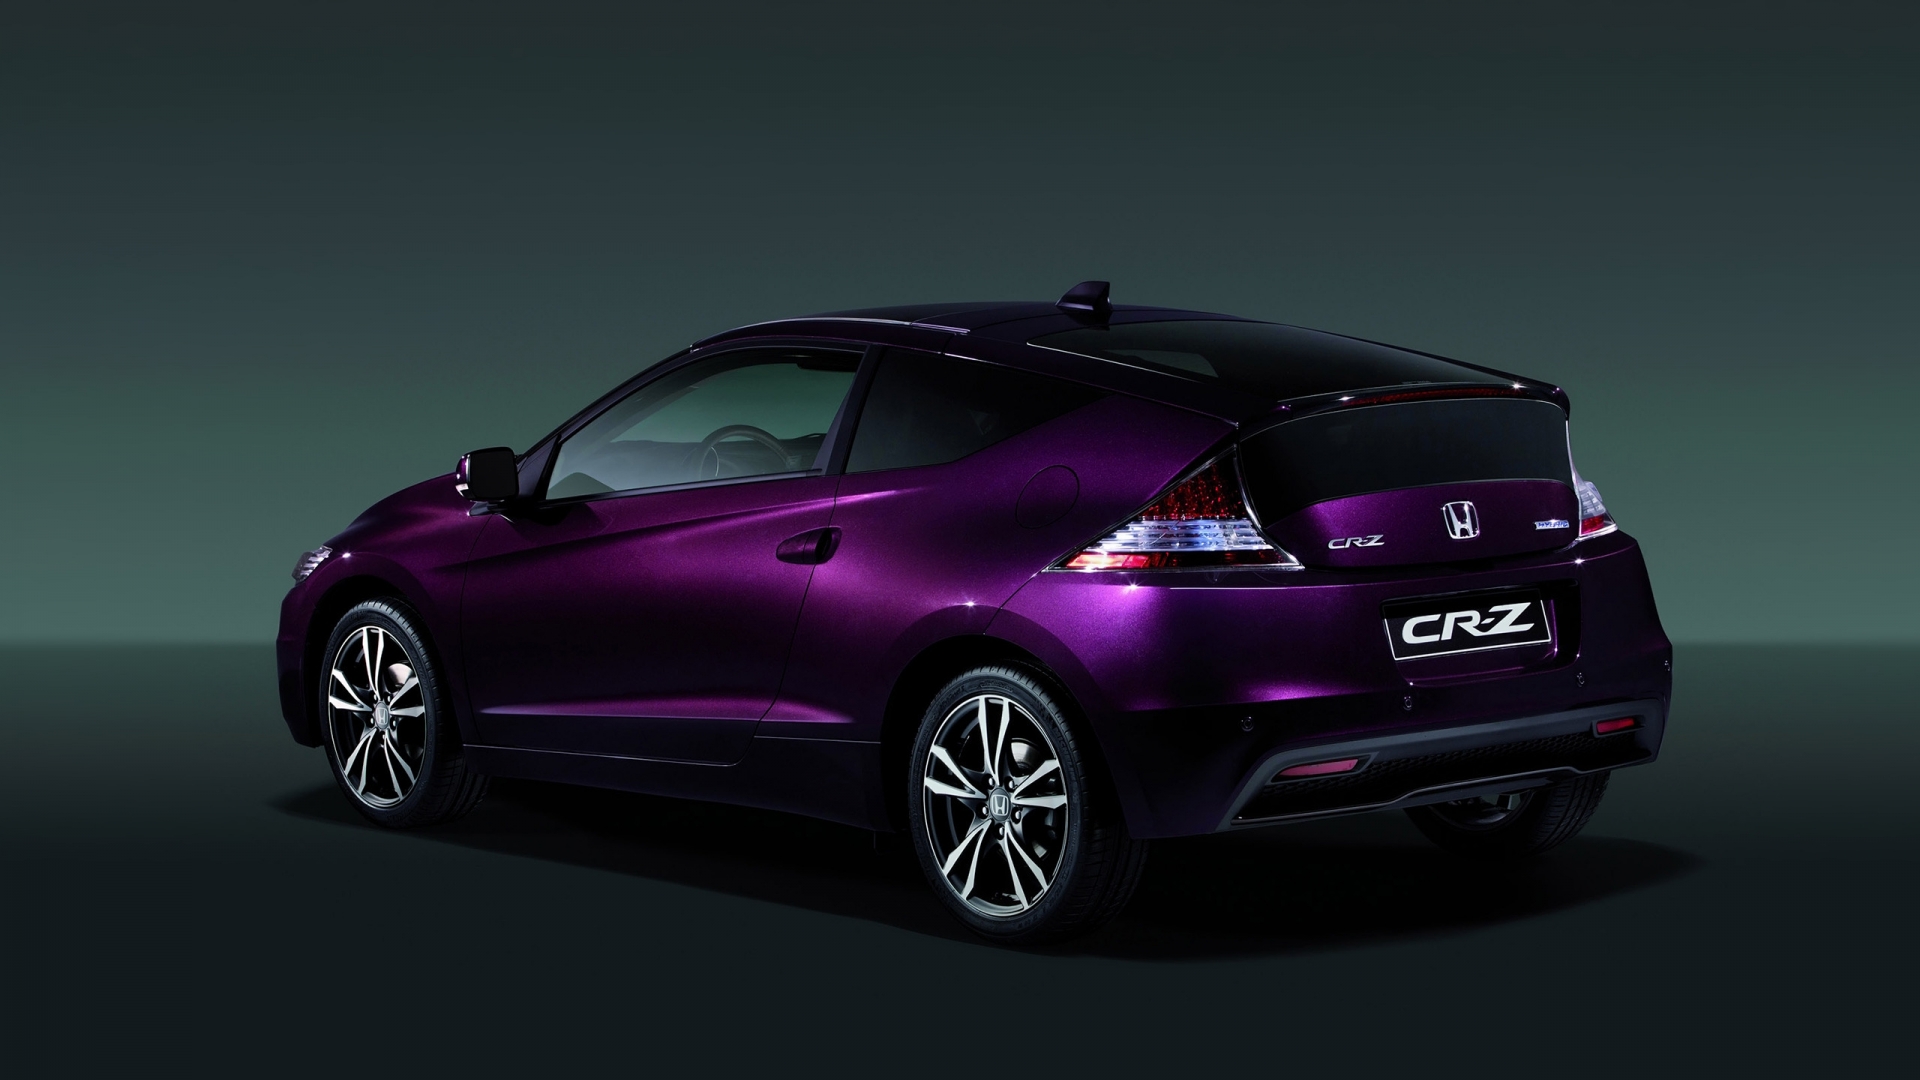 2013 Honda CR-Z Hybrid for 1920 x 1080 HDTV 1080p resolution